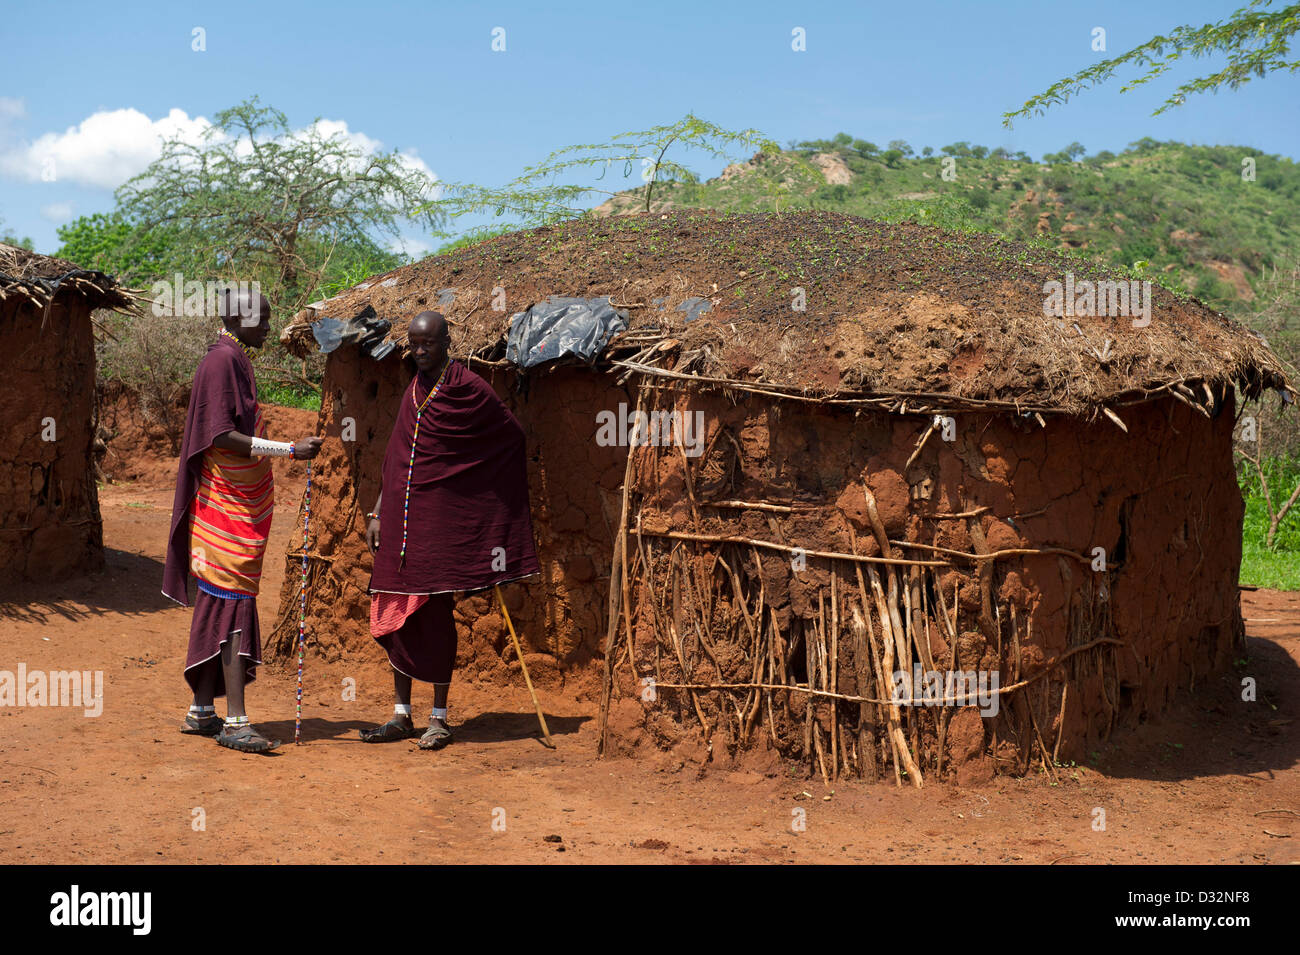 Maasai men and traditional huts in the manyatta, Kenya Stock Photo